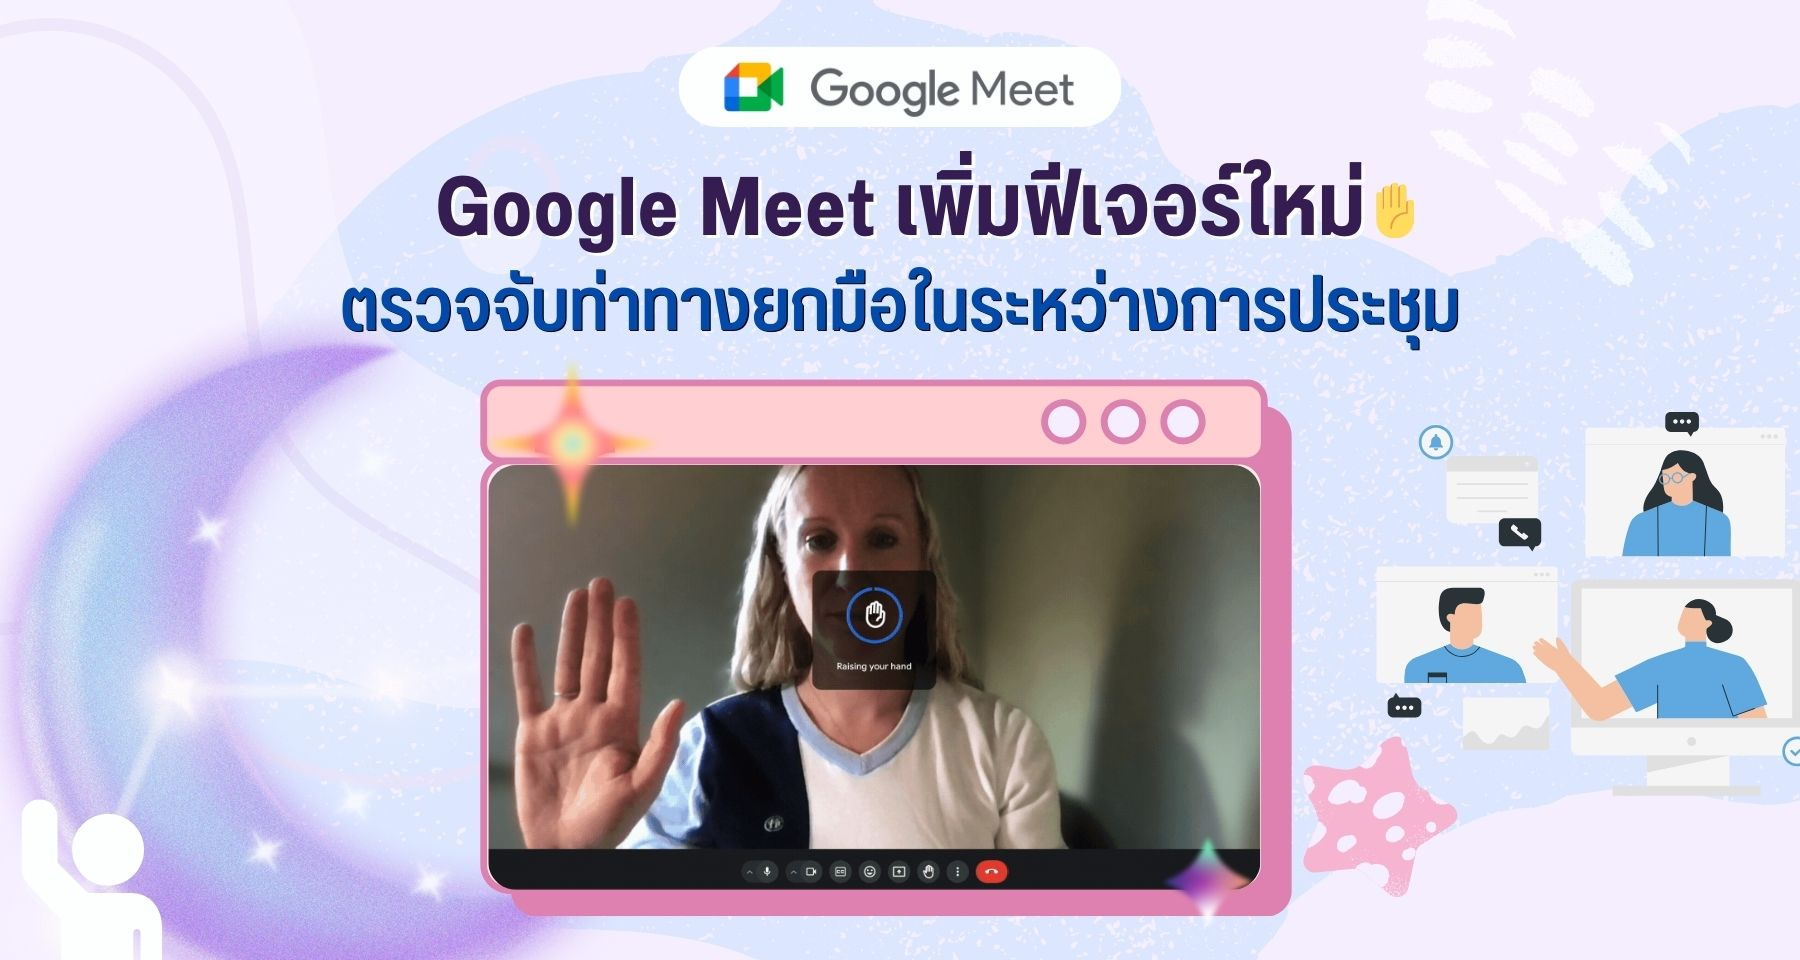 Google Meet เพิ่มฟีเจอร์ตรวจจับท่าทางยกมือในระหว่างการประชุม